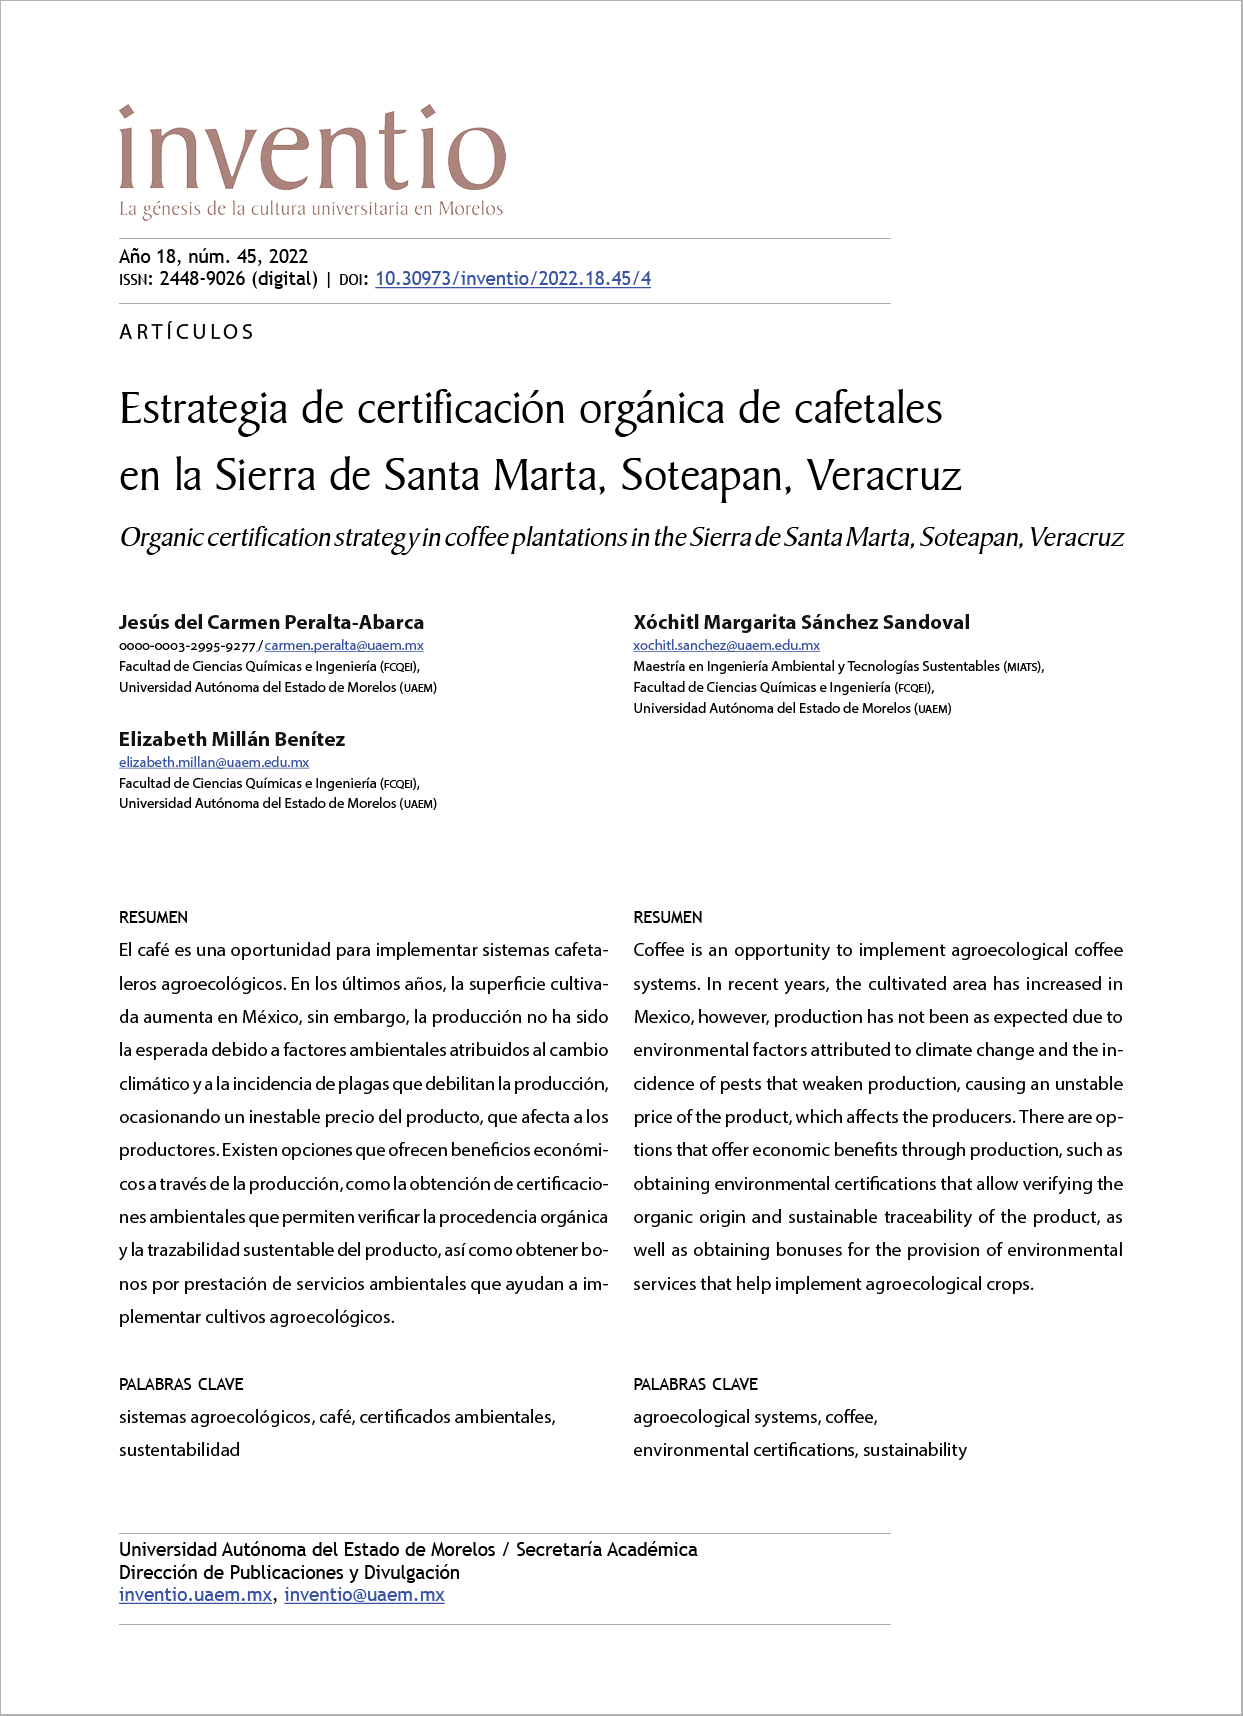 Estrategia de certificación orgánica en cafetales de la Sierra de Santa Marta, Soteapan, Veracruz